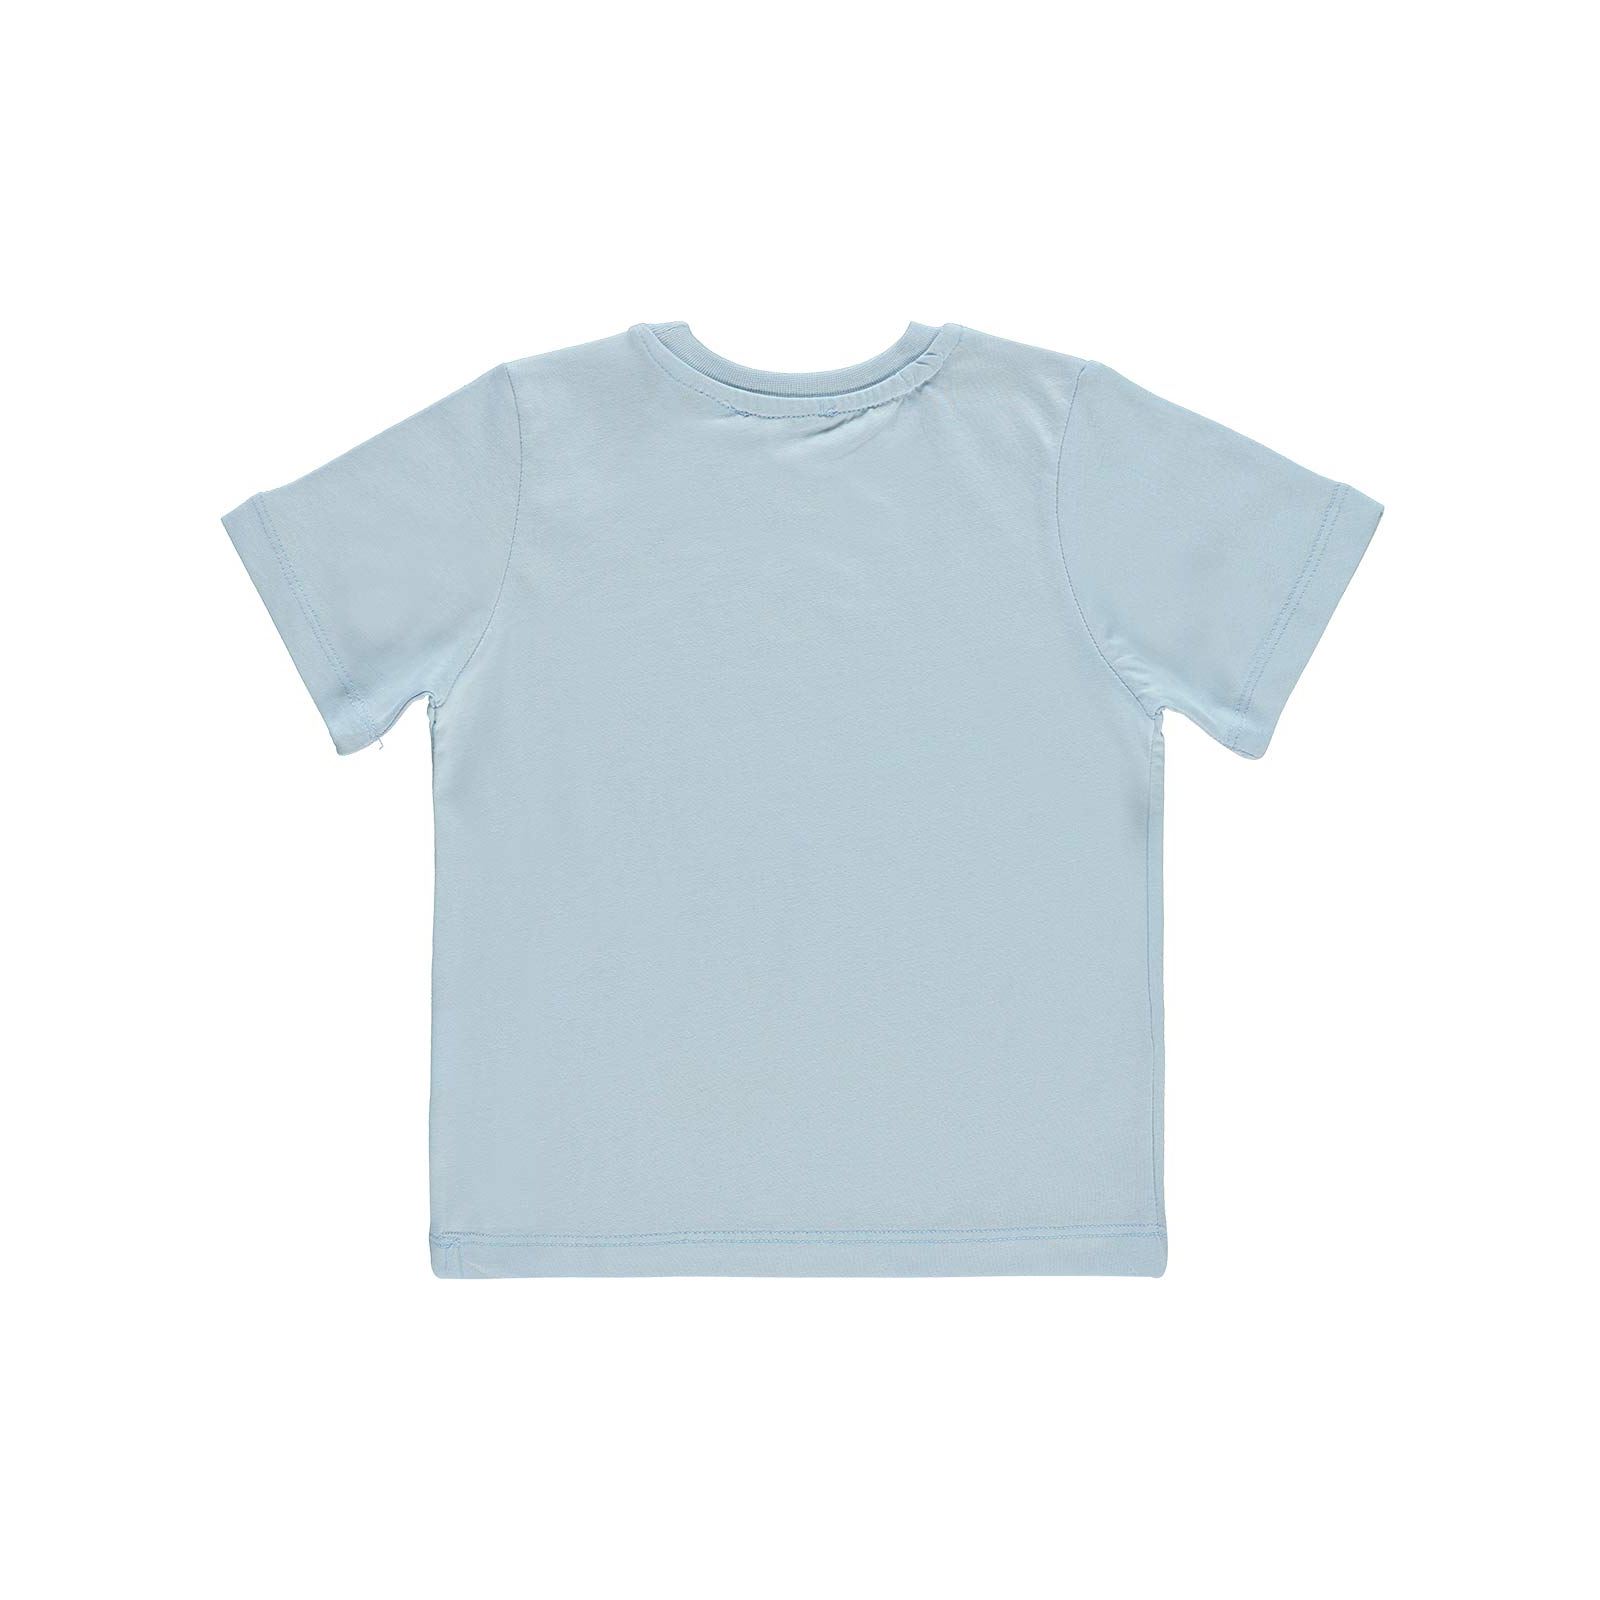 Kukuli Erkek Çocuk Tişört 2-5 Yaş Açık Mavi